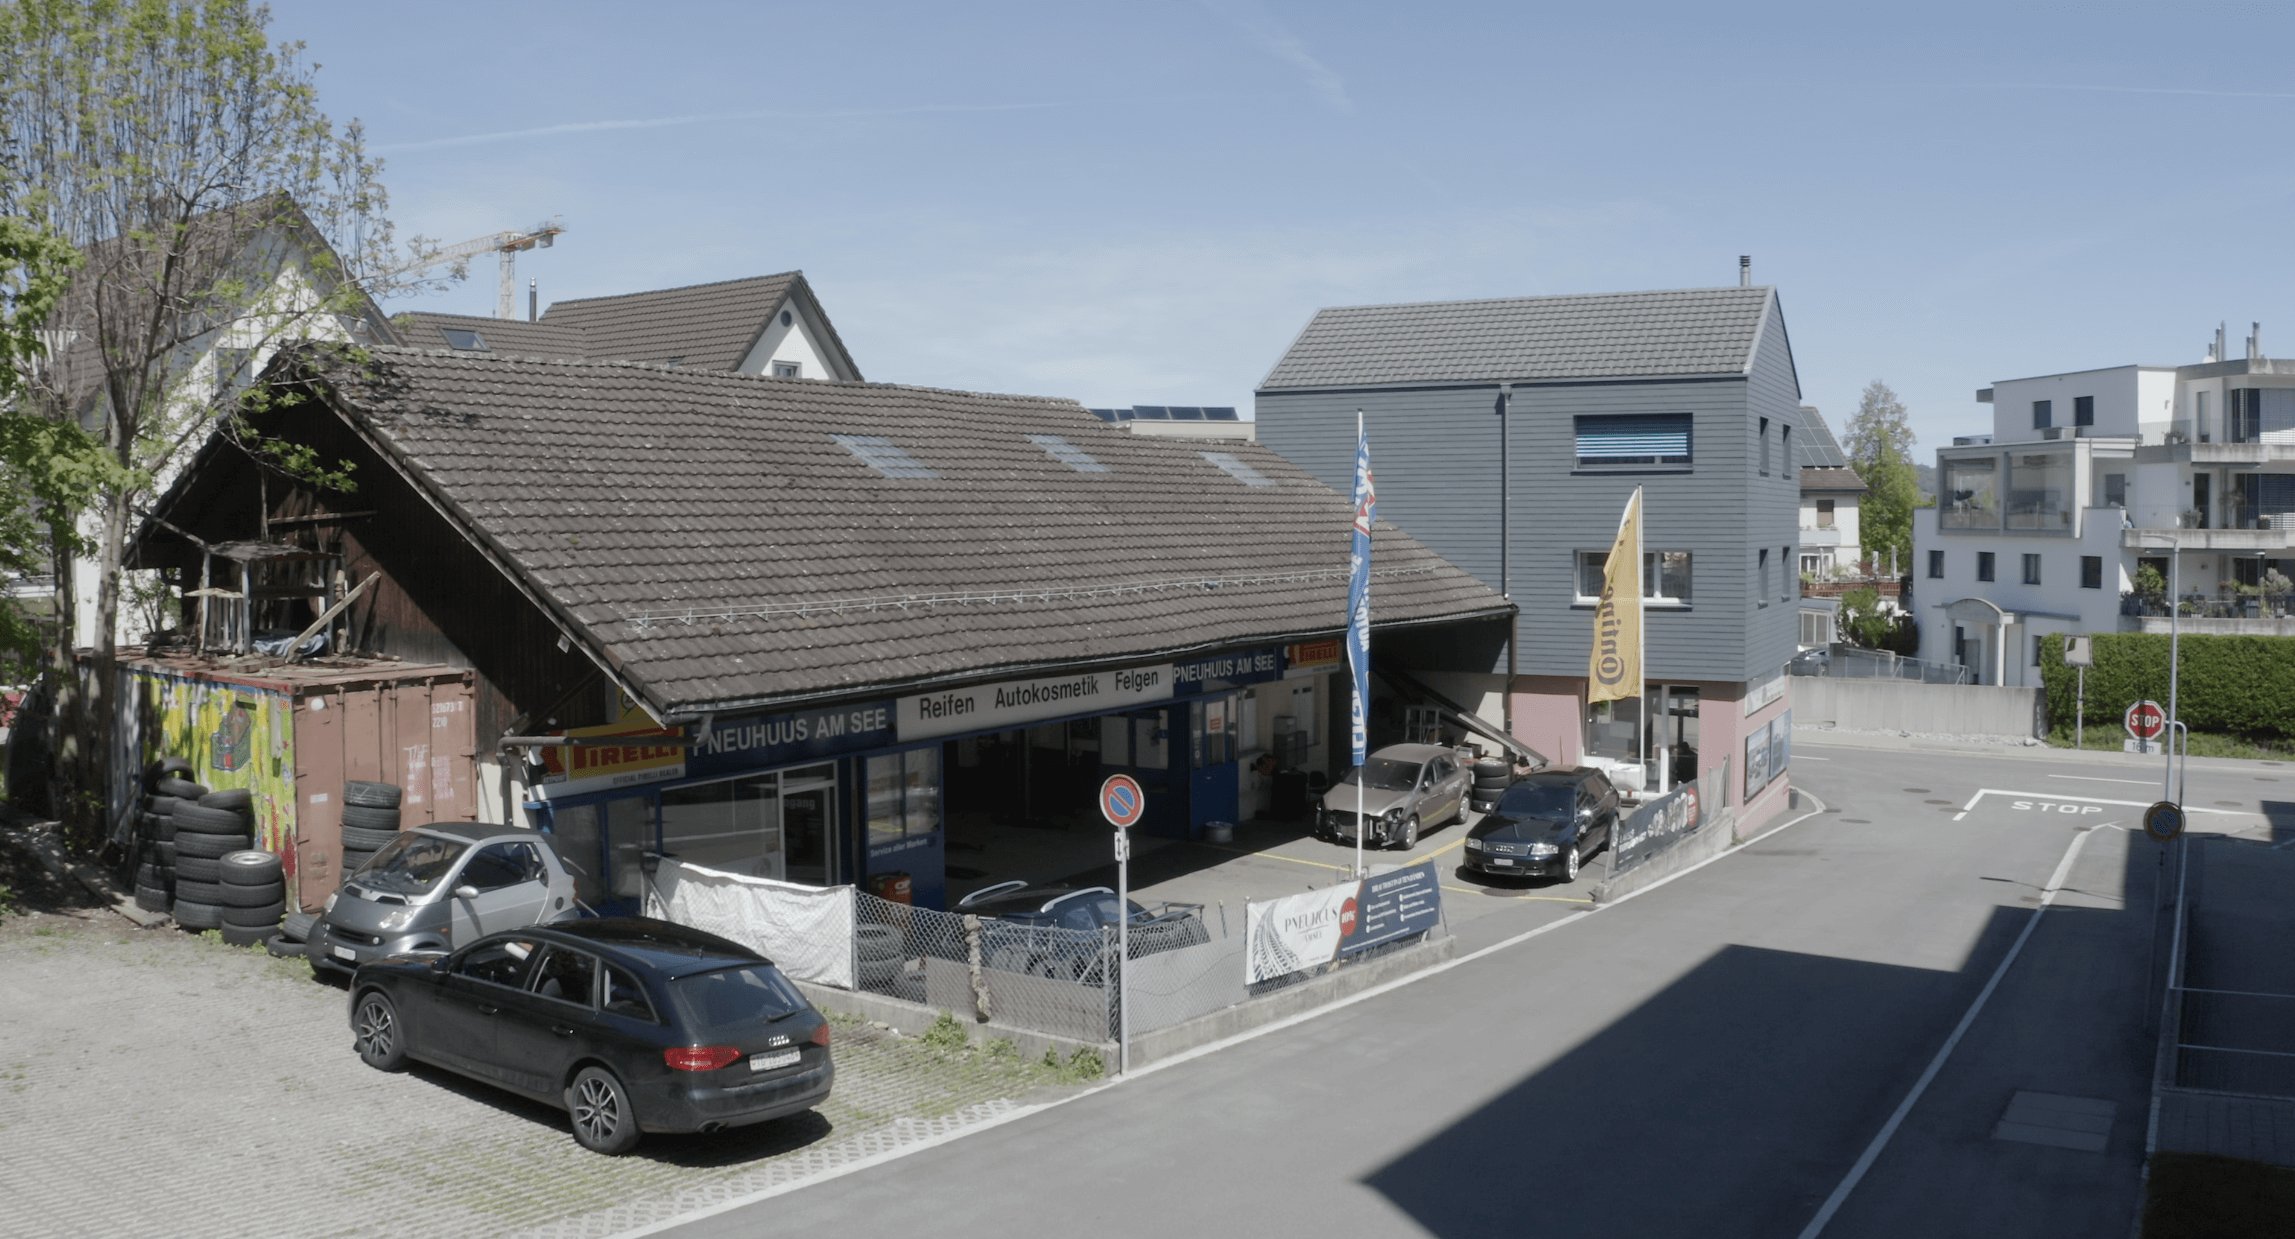 Garage-von-Seite-3-Pneuhuus-am-See-GmbH